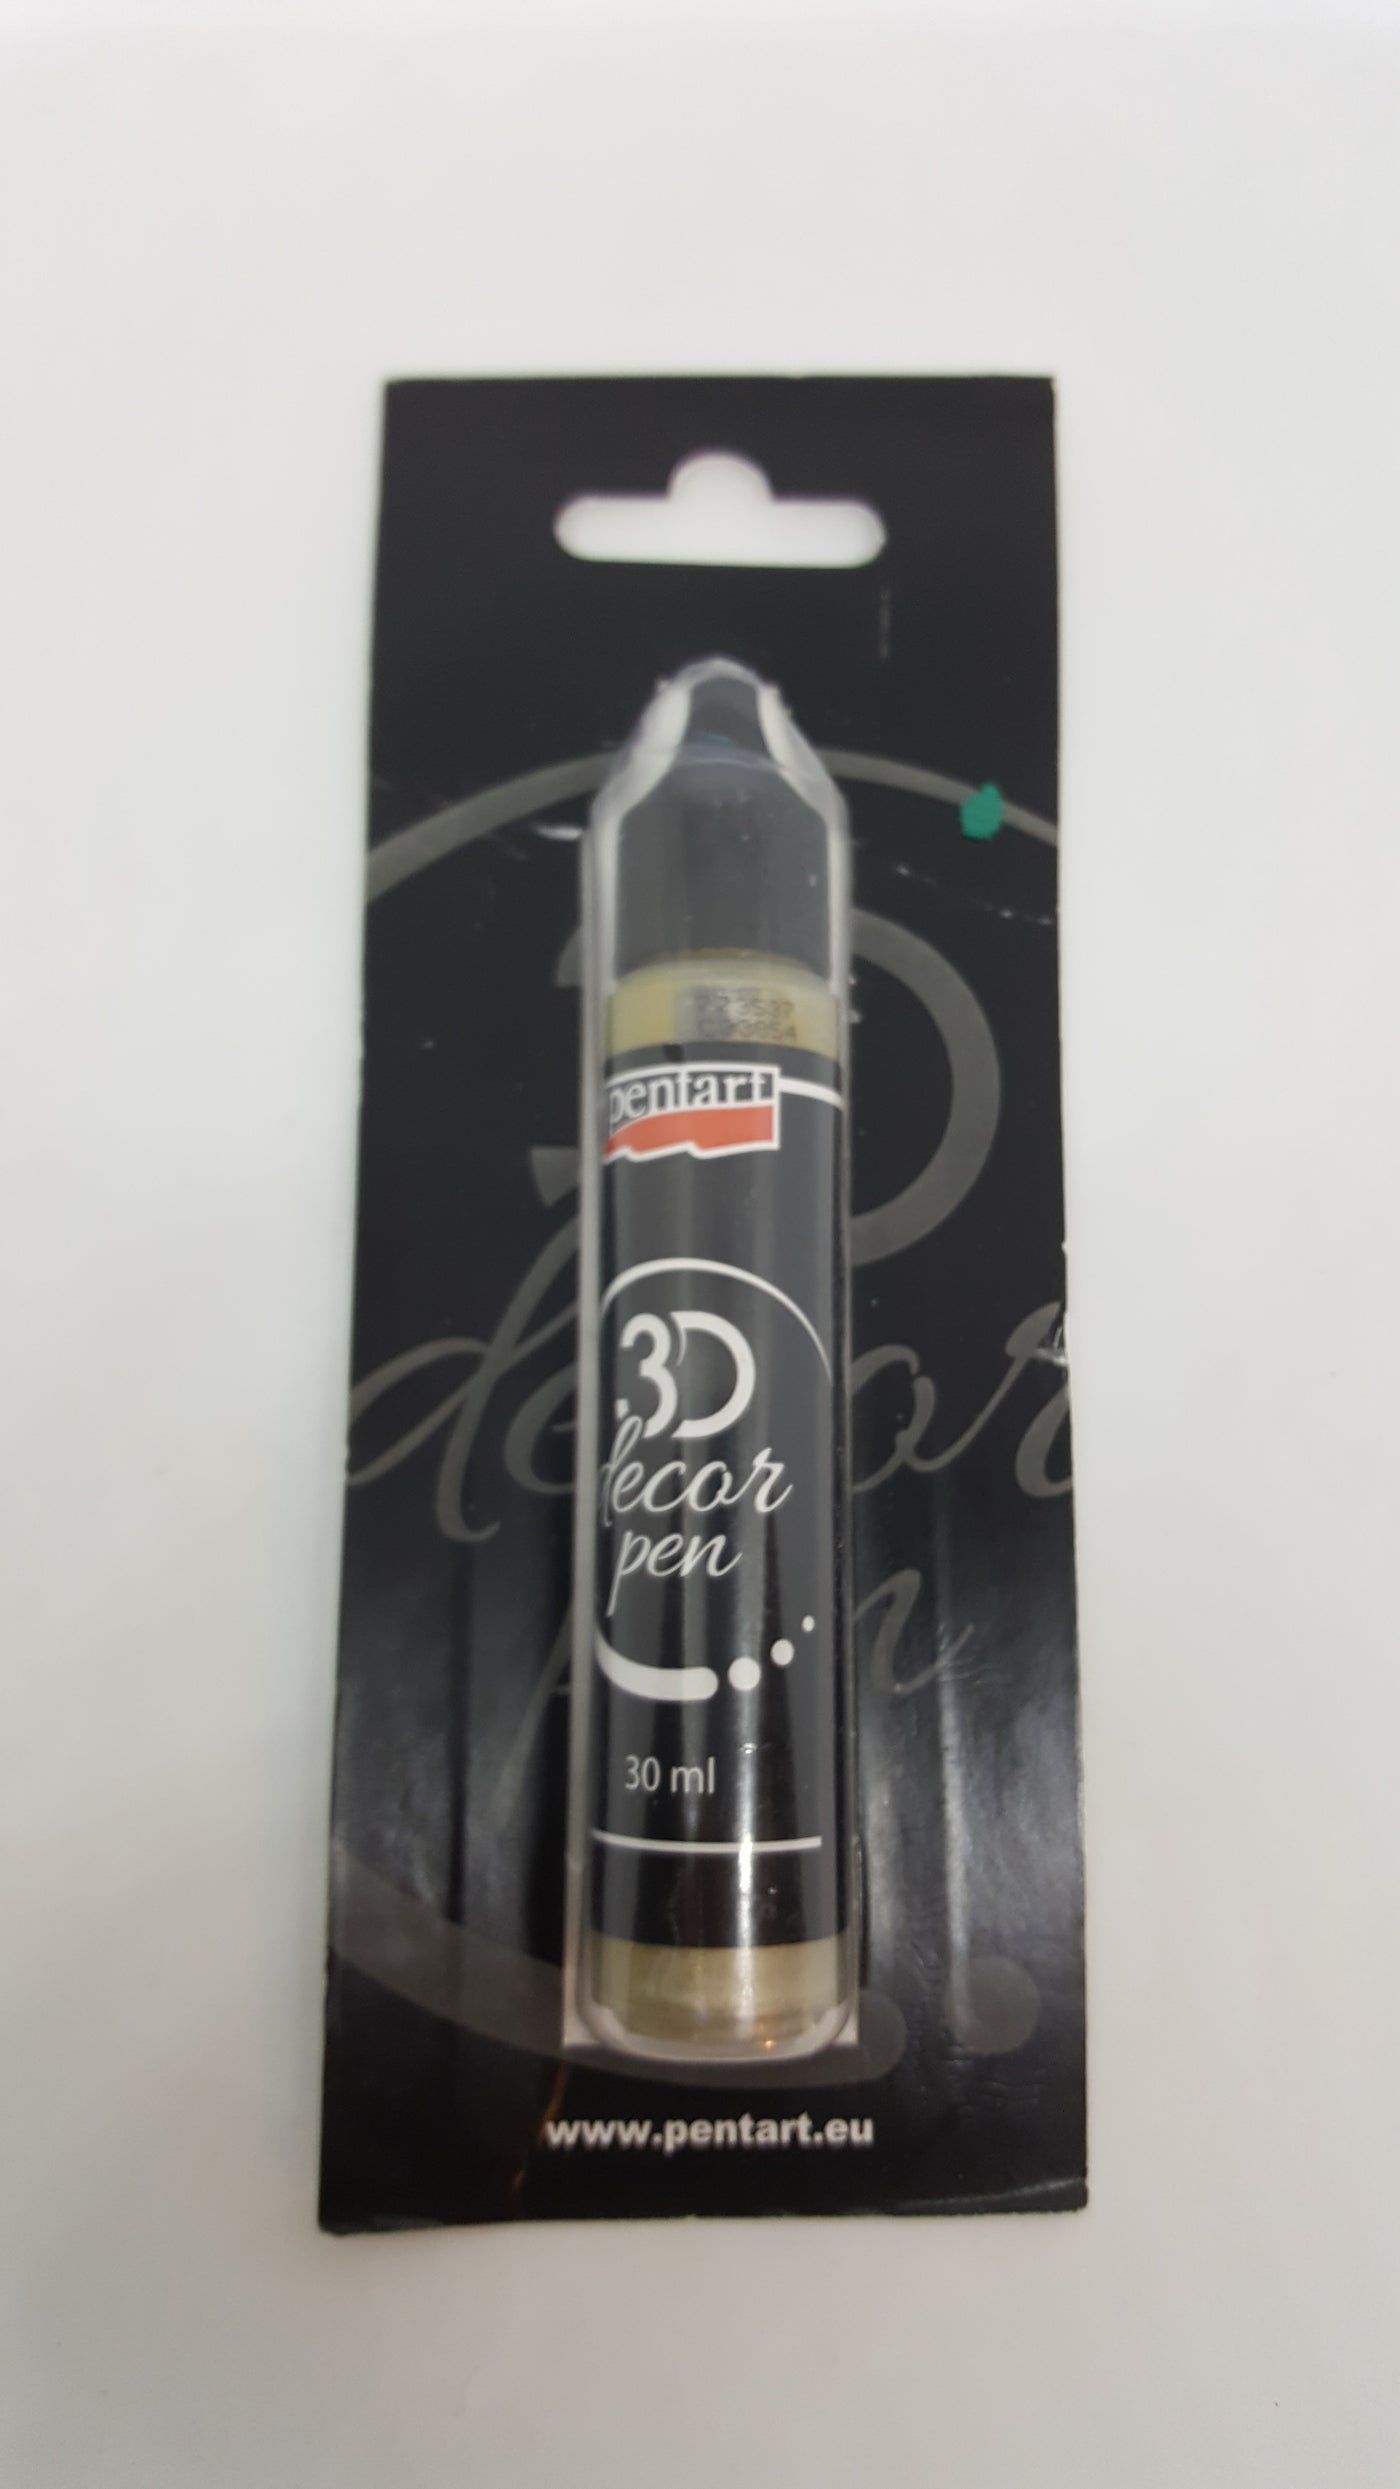 Pentart 3D Decor Pens (Opaque)